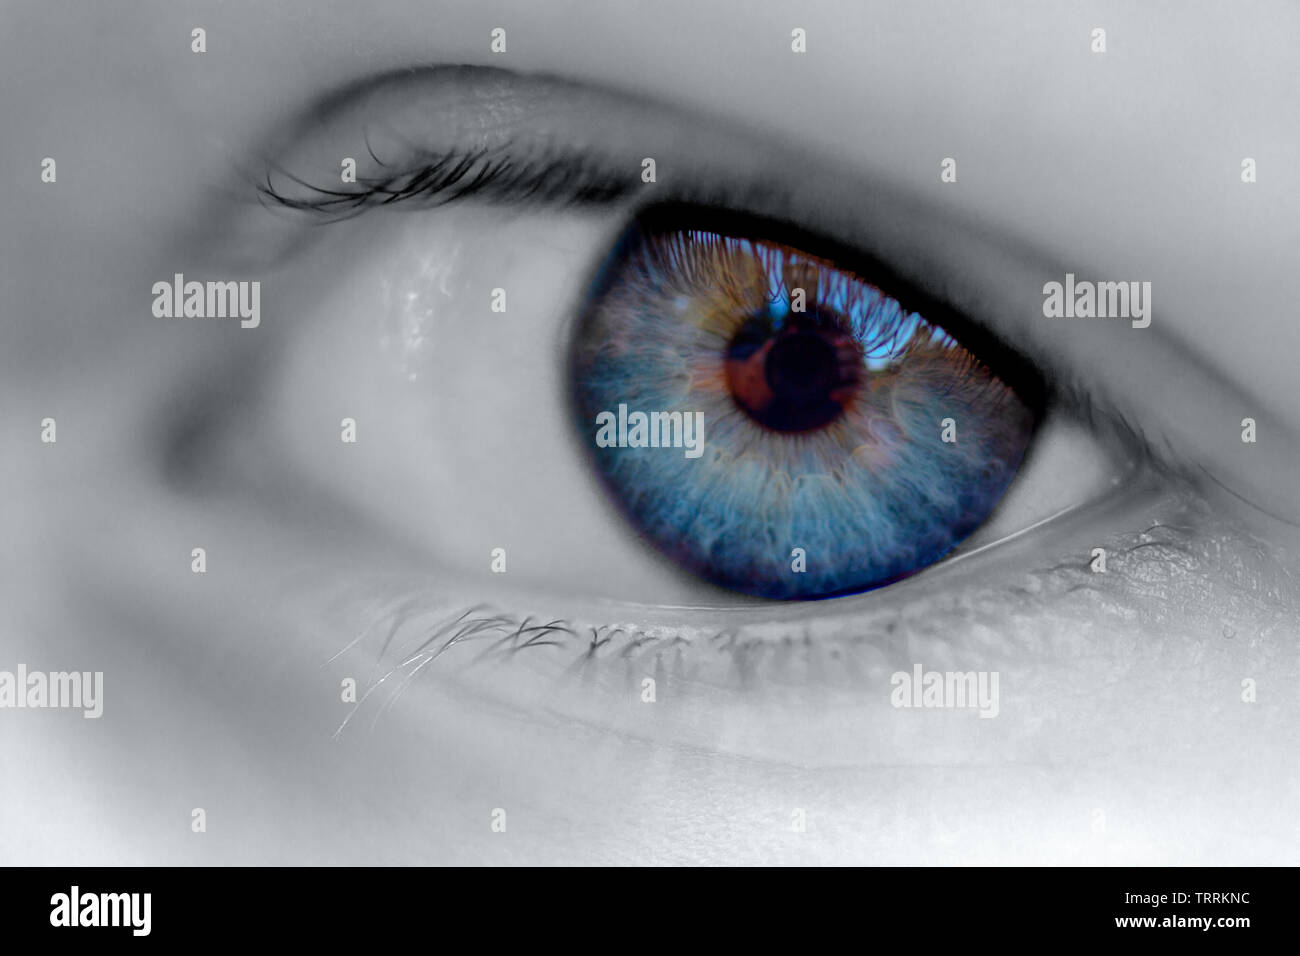 Image en noir et blanc d'un globe oculaire avec un iris bleu. Couleur bleu nuit sélective Banque D'Images